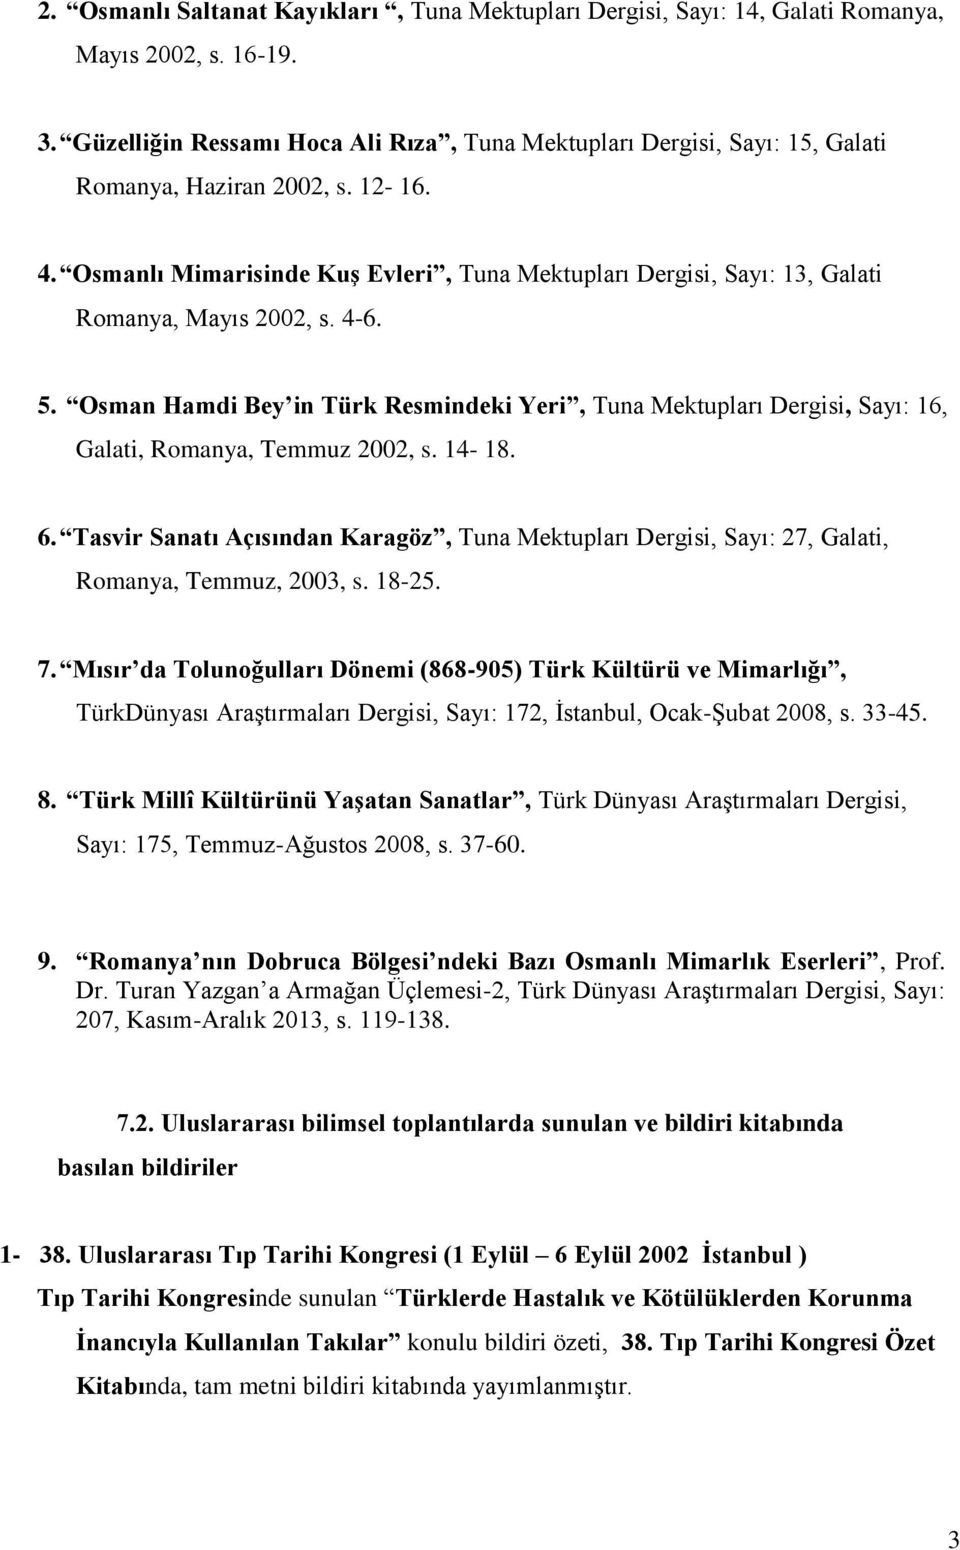 Osmanlı Mimarisinde Kuş Evleri, Tuna Mektupları Dergisi, Sayı: 13, Galati Romanya, Mayıs 2002, s. 4-6. 5.